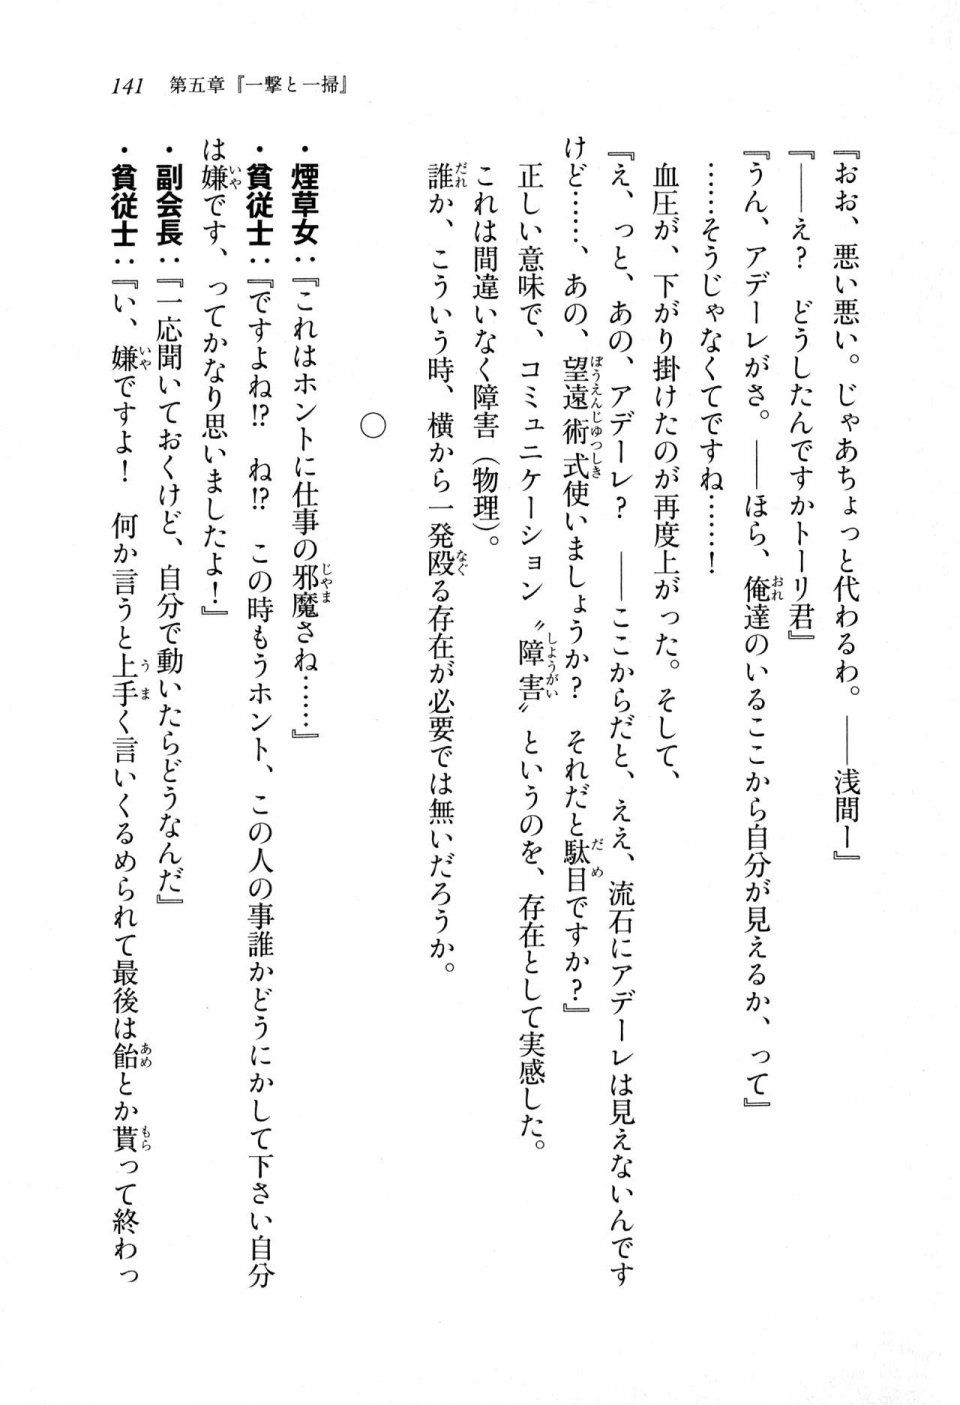 Kyoukai Senjou no Horizon LN Sidestory Vol 1 - Photo #139